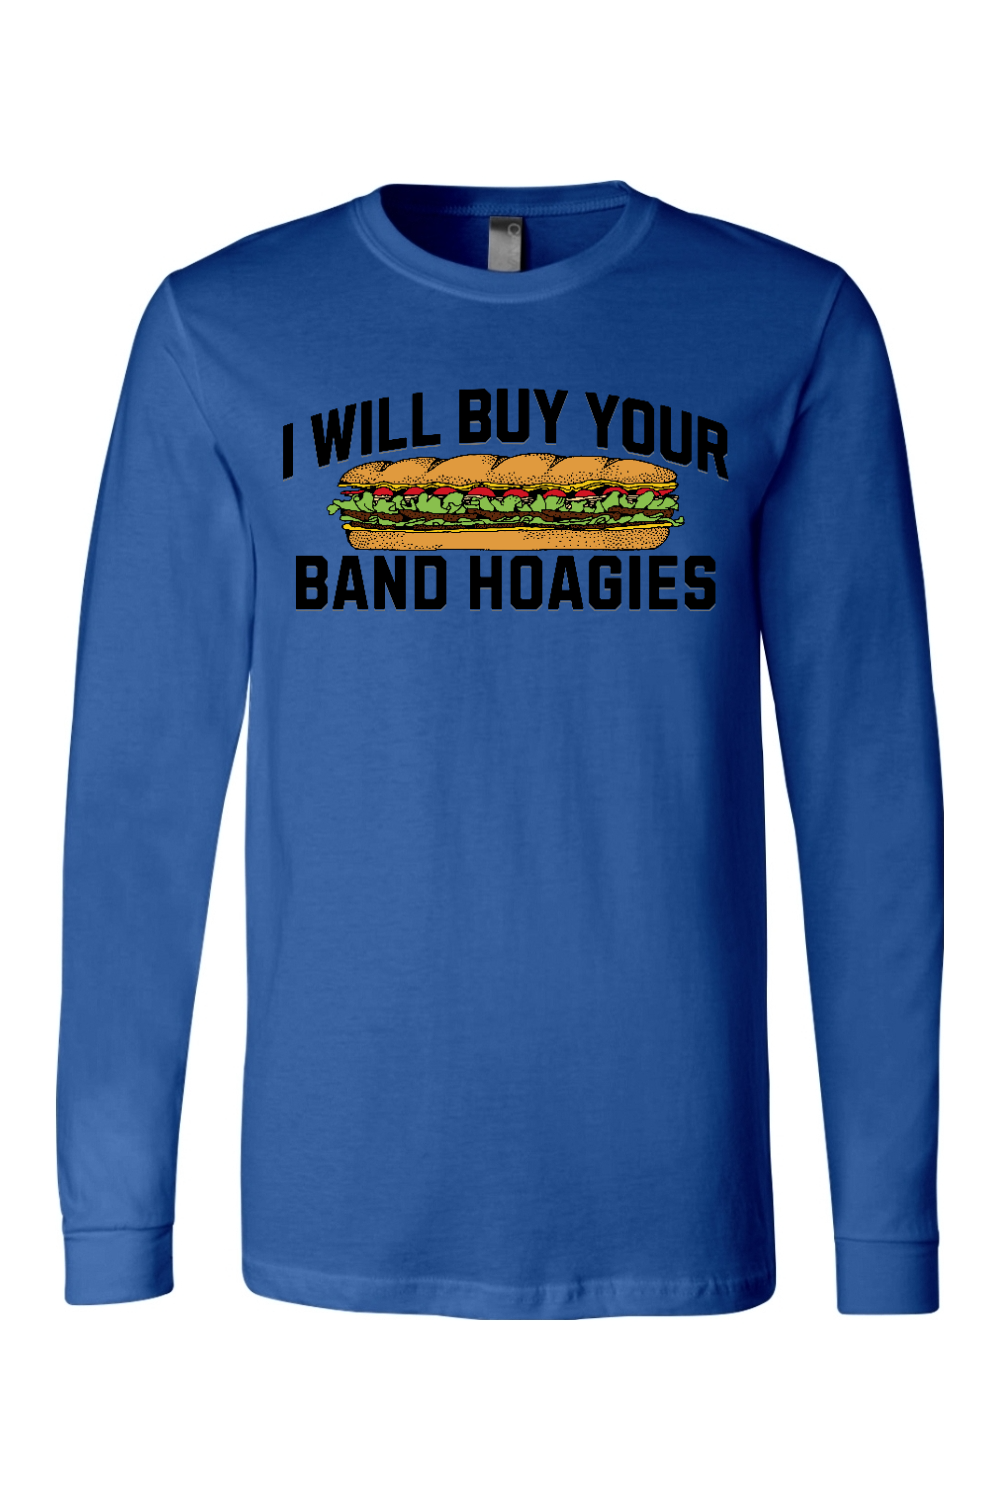 I Buy Band Hoagies - Long Sleeve Tee - Yinzylvania